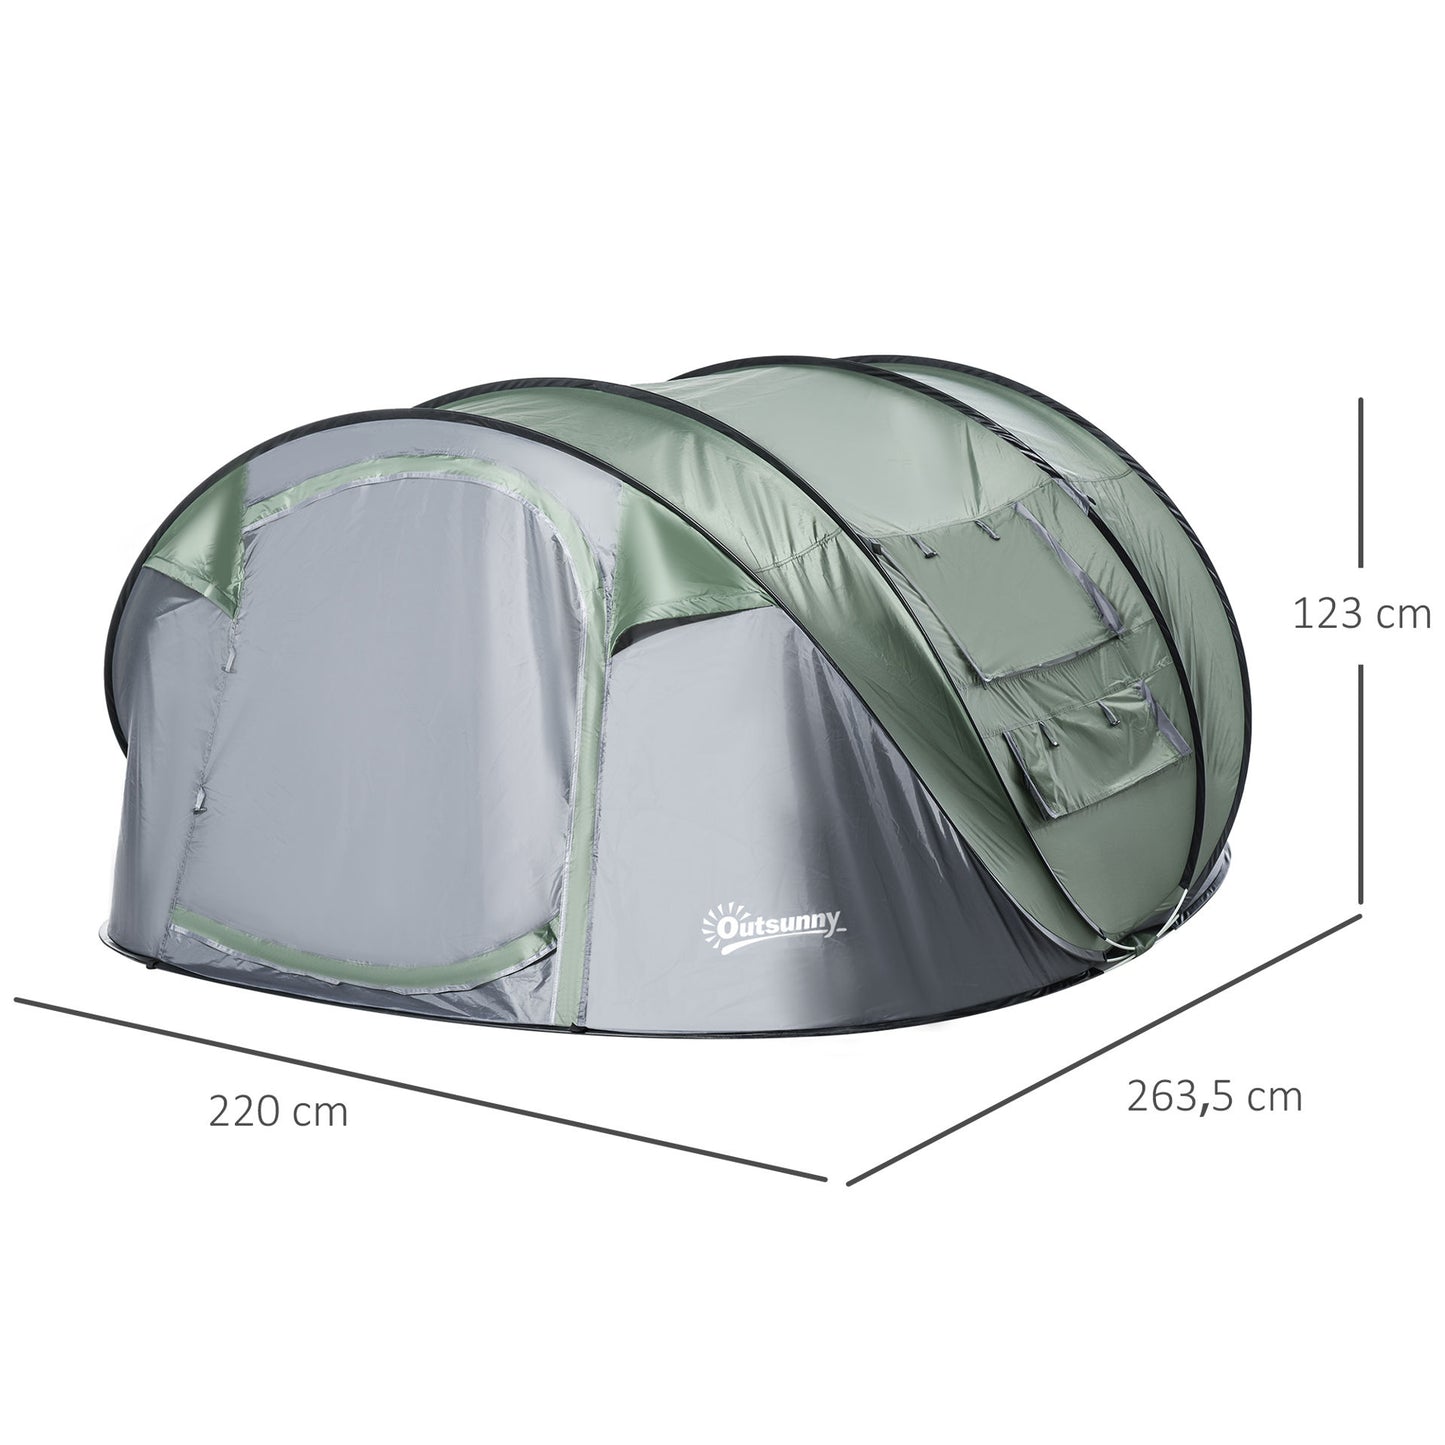 Tente de camping Nancy's The Dump - Tente de camping - 4 à 5 personnes - Vert - ± 265 x 220 x 125 cm